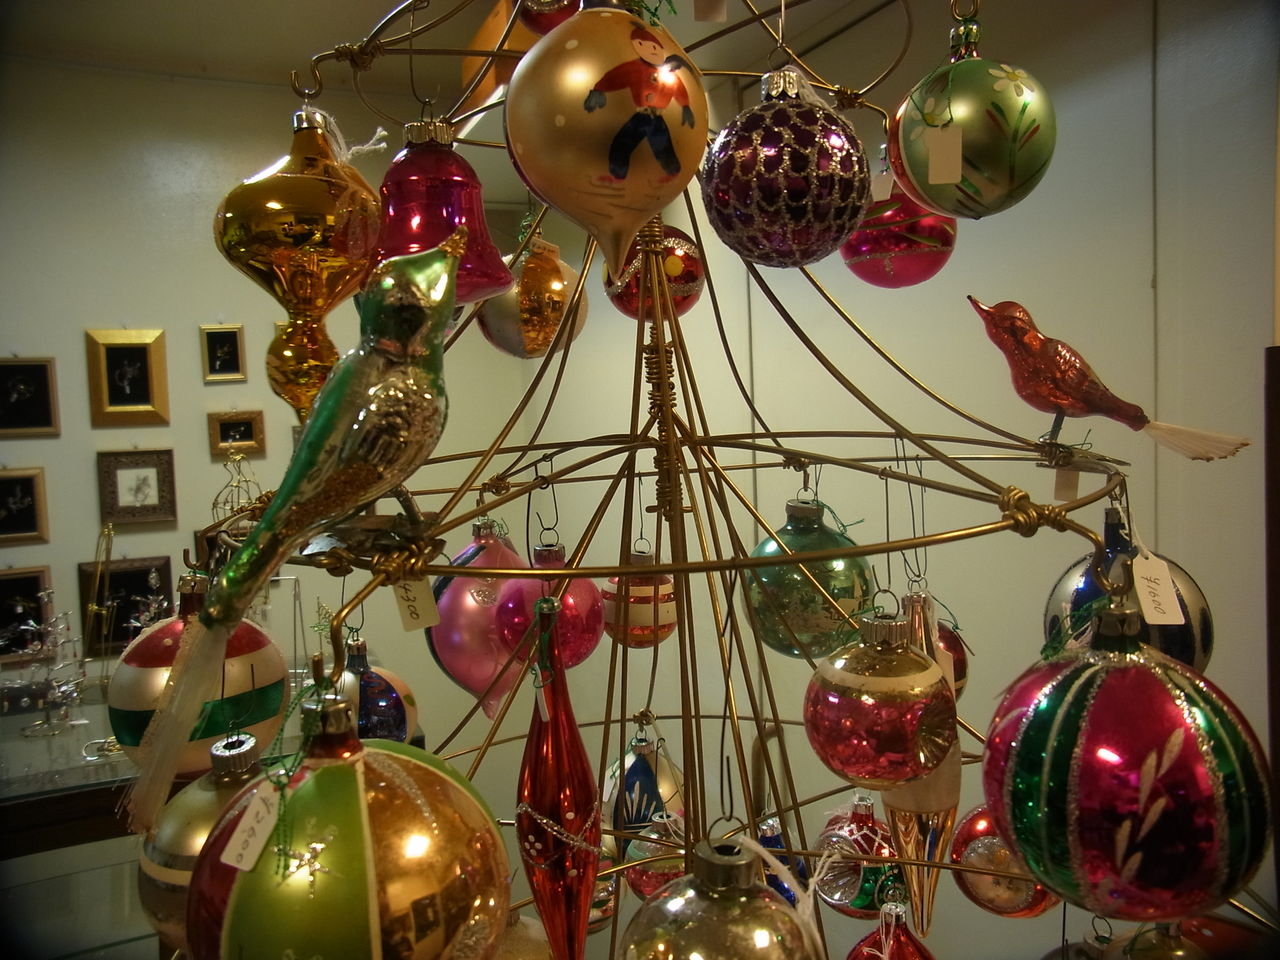 針金細工 クリスマス アビアントがヴィンテージガラスのクリスマスオーナメント1色になりました。 : 針金細工職人 銀三こと林雄三のブログ